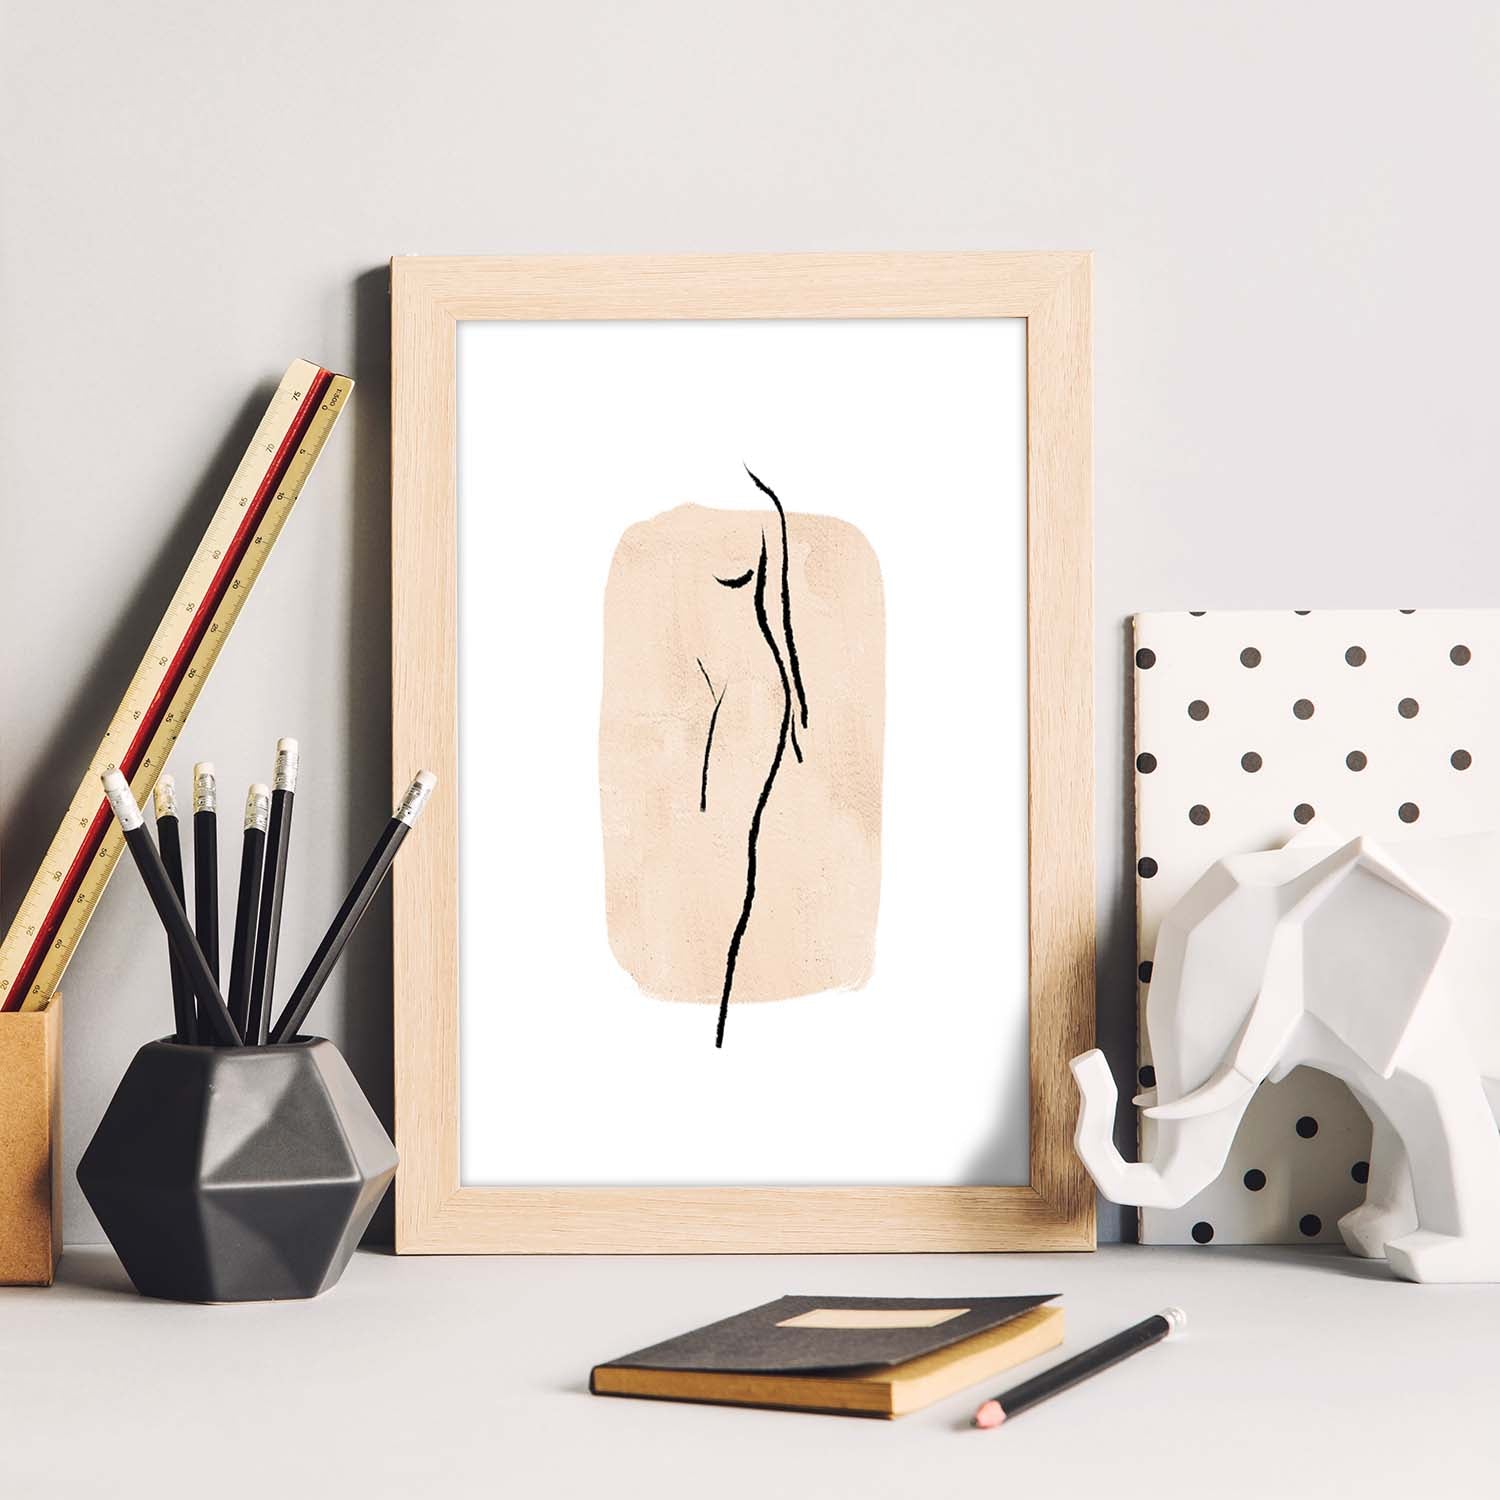 Poster con ilustracion de mujer. Dibujos con formas, caras, cuerpos y gestos de mujeres. 'Mujeres 13'.-Artwork-Nacnic-Nacnic Estudio SL